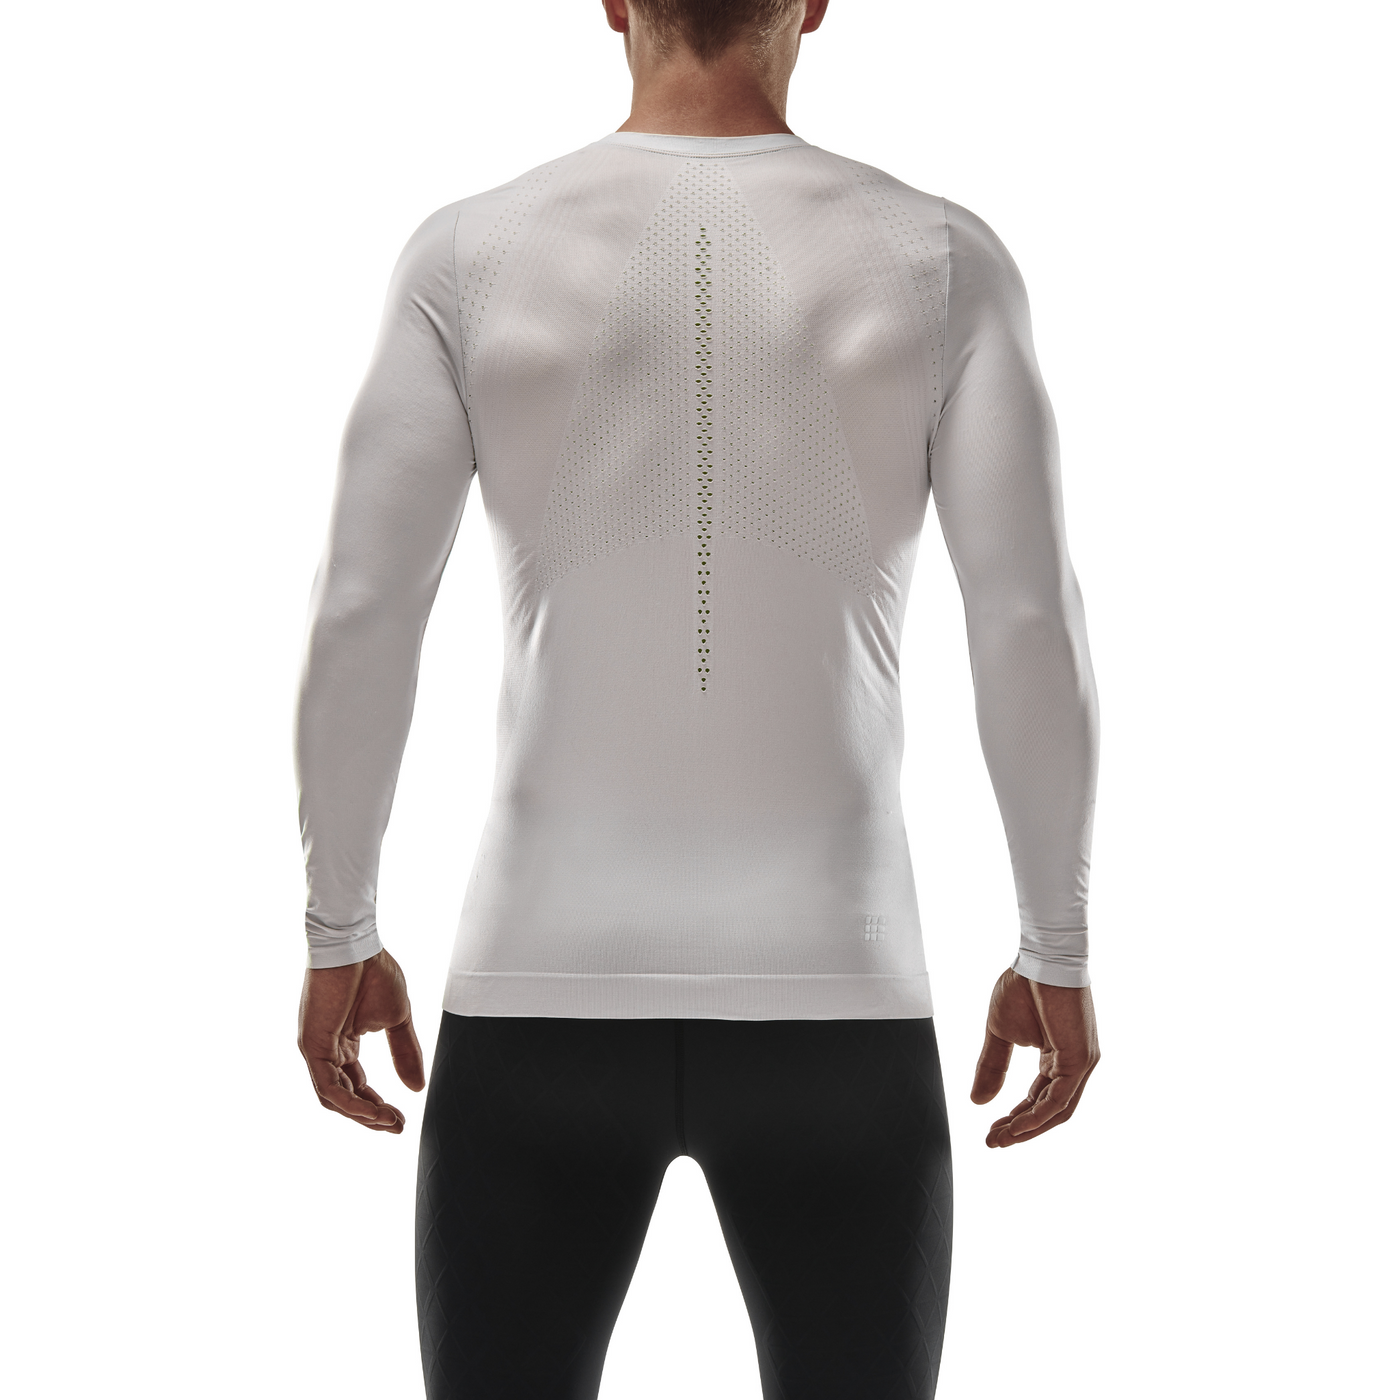 Ultralight Long Sleeve Shirt, Men, White, Back View Model